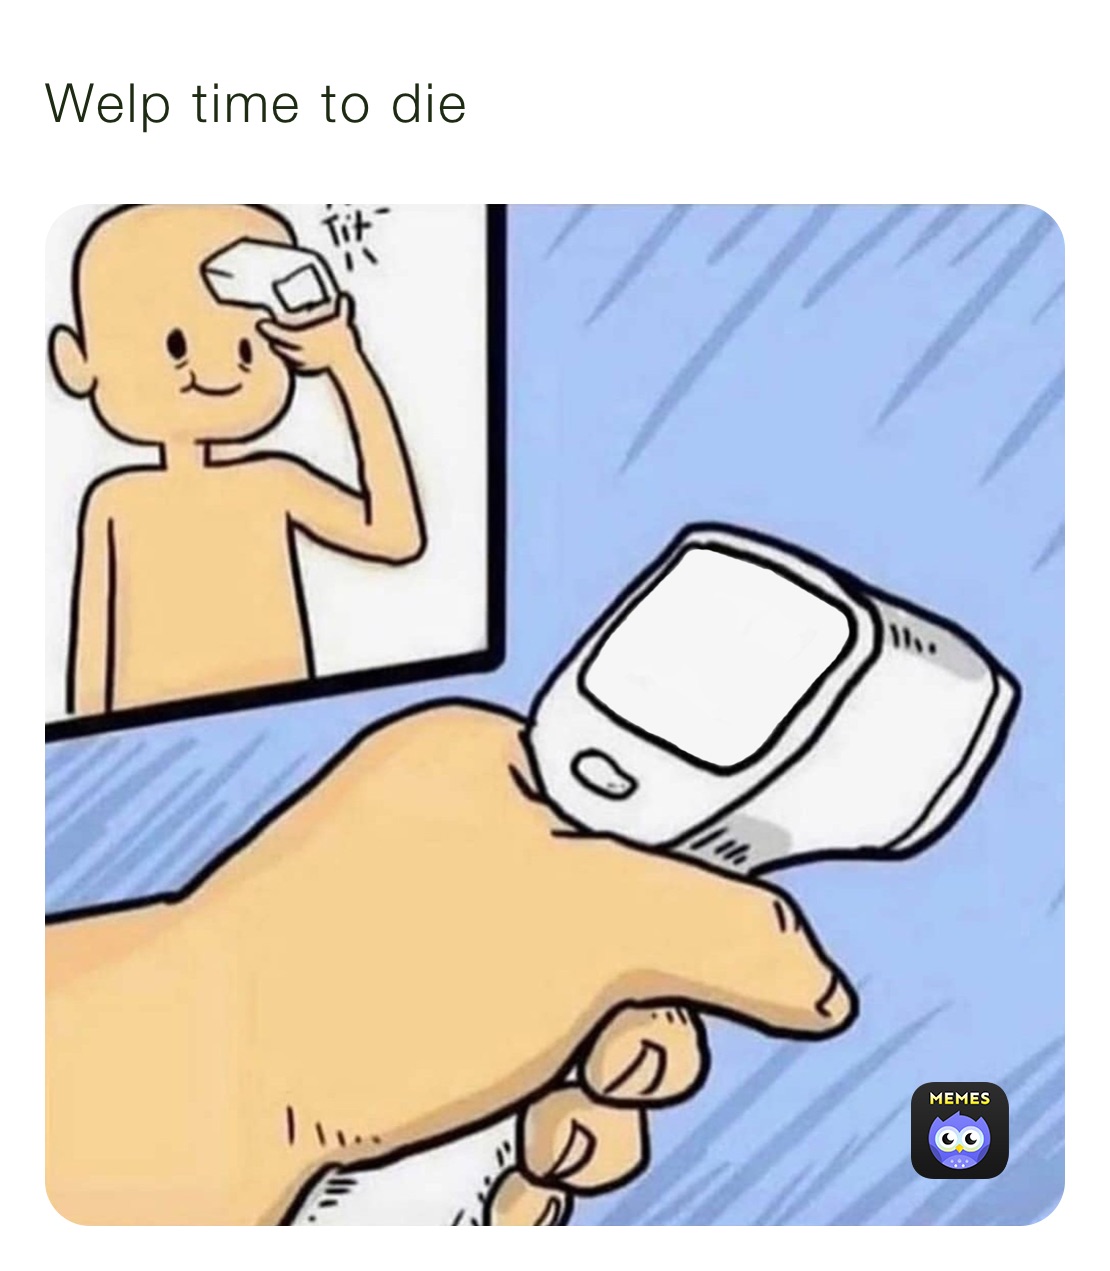 Welp time to die